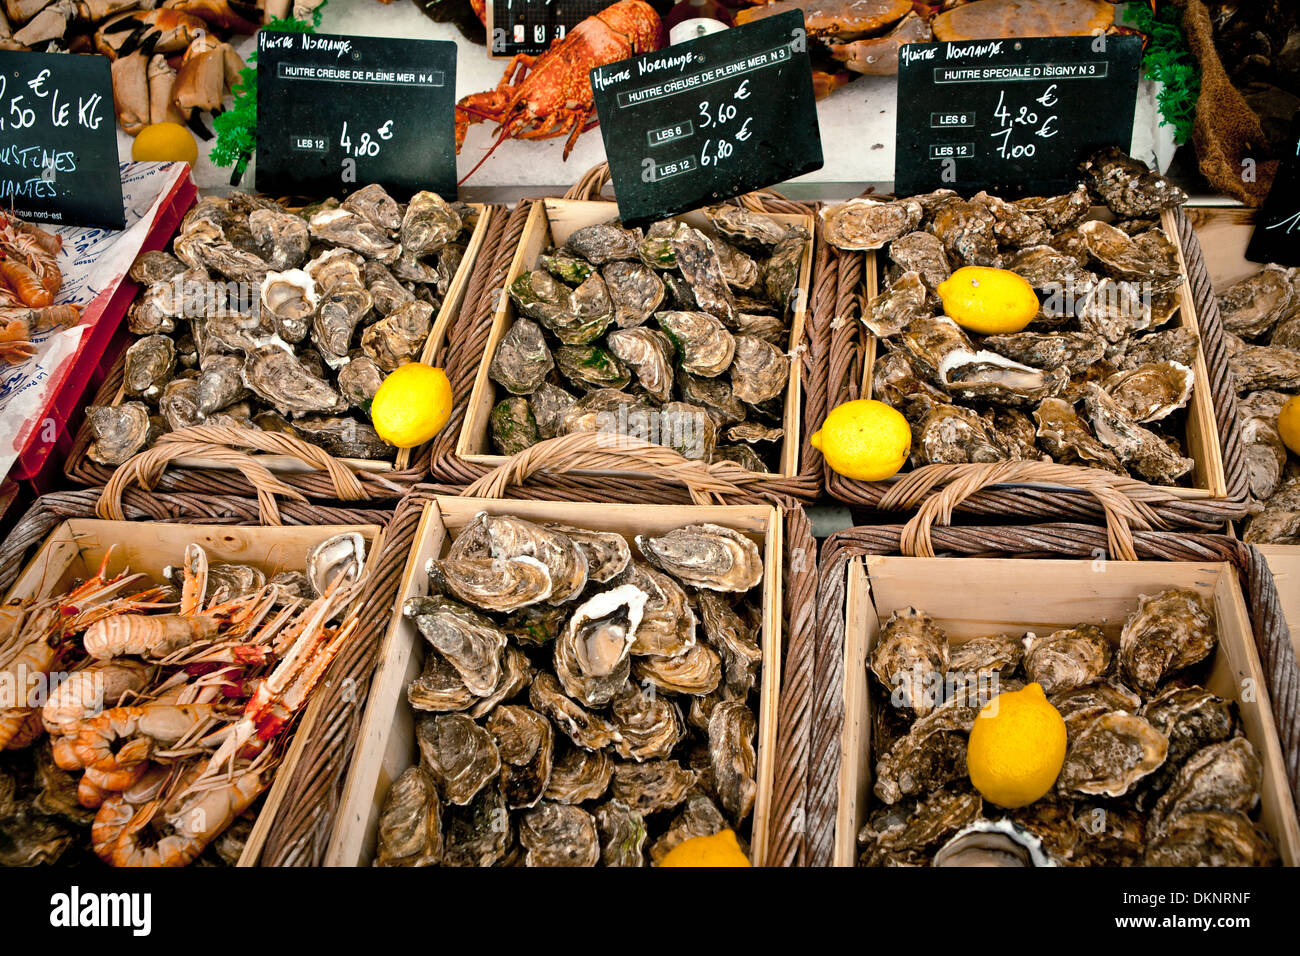 Les fruits de mer. La ville de Trouville, Normandie, France, Europe Banque D'Images